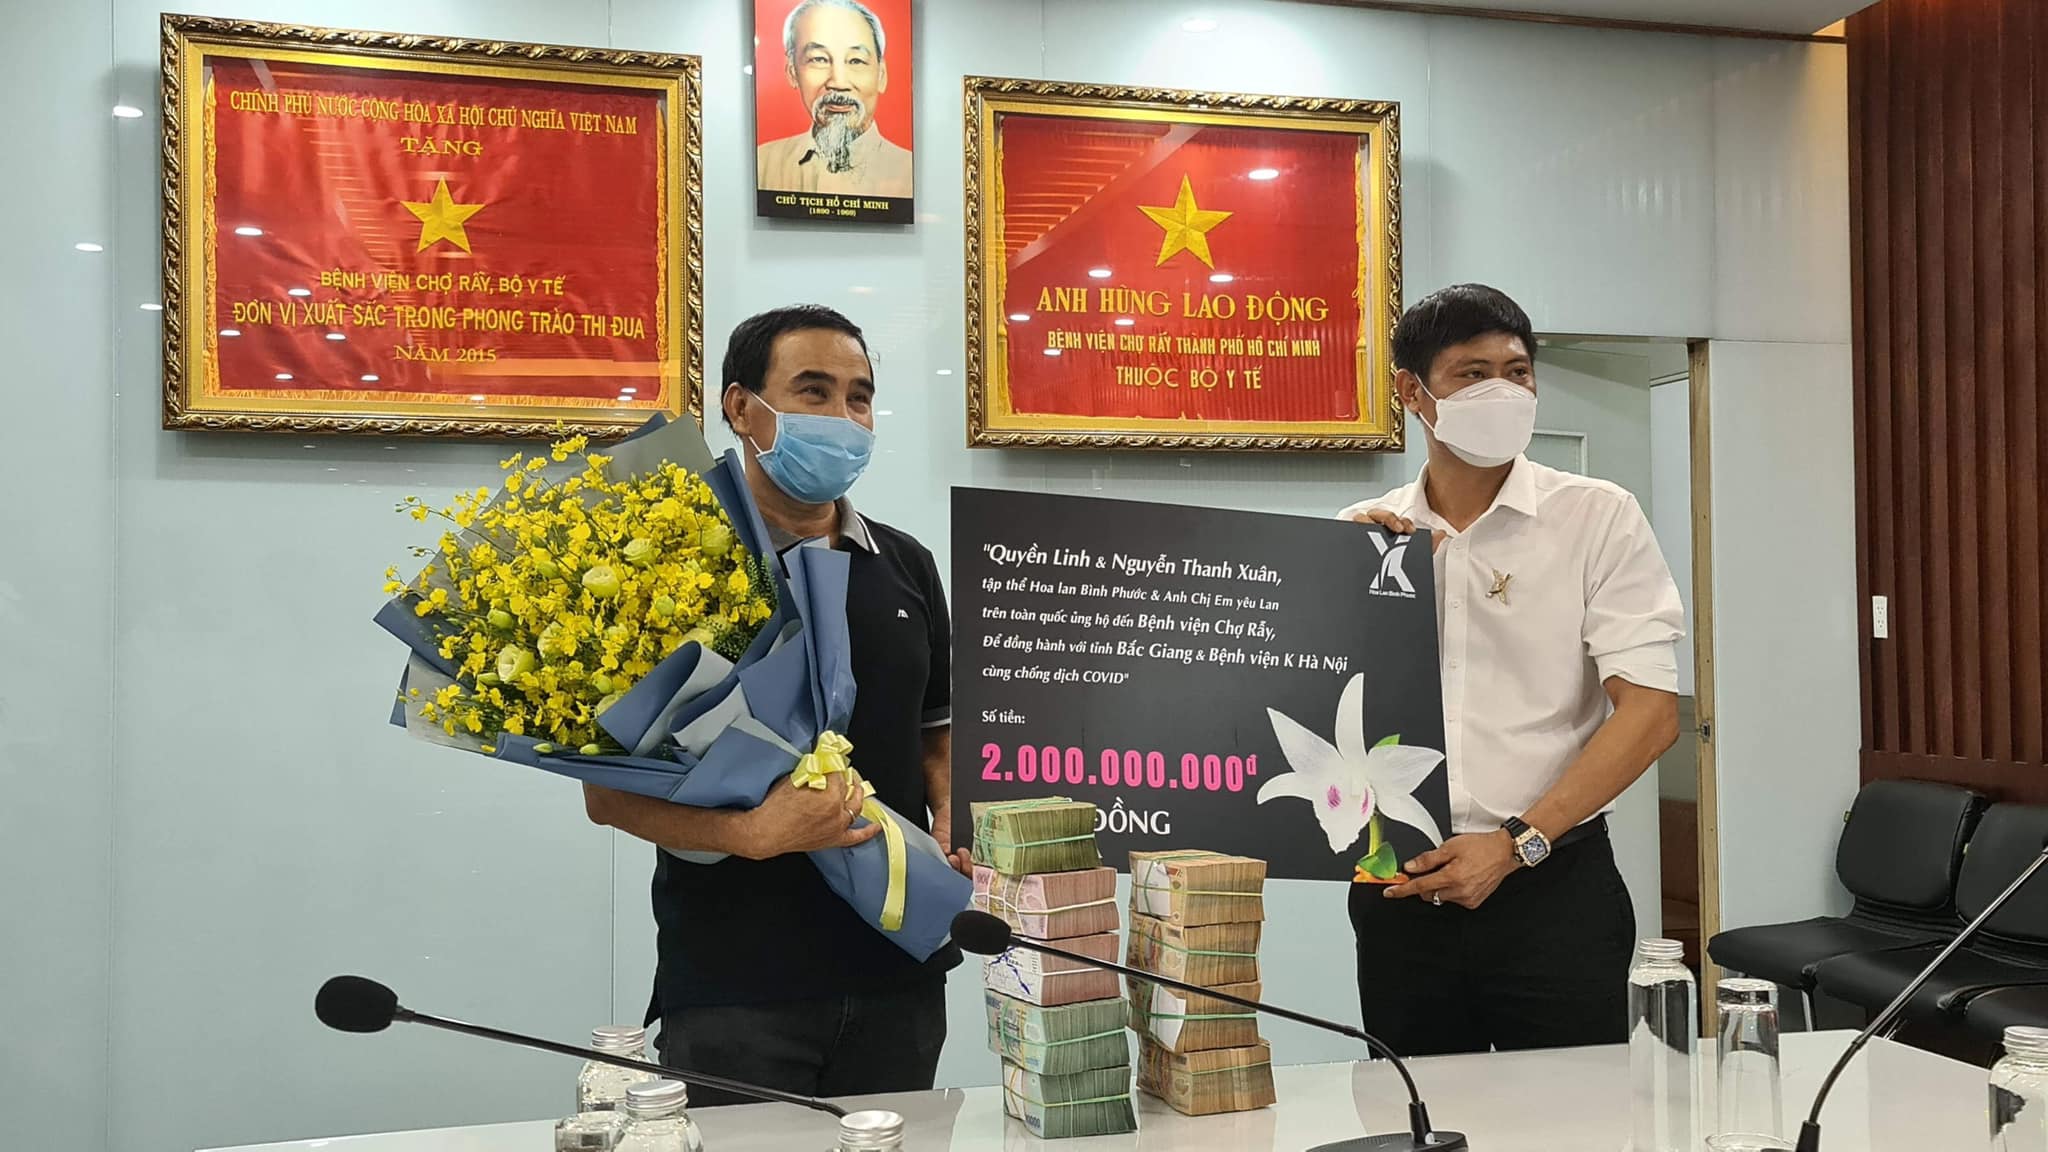 Quyền Linh cùng bạn bè quyên góp 2 tỷ hỗ trợ Bắc Giang chống dịch, CĐM khen ngợi: Không bao giờ làm thất vọng